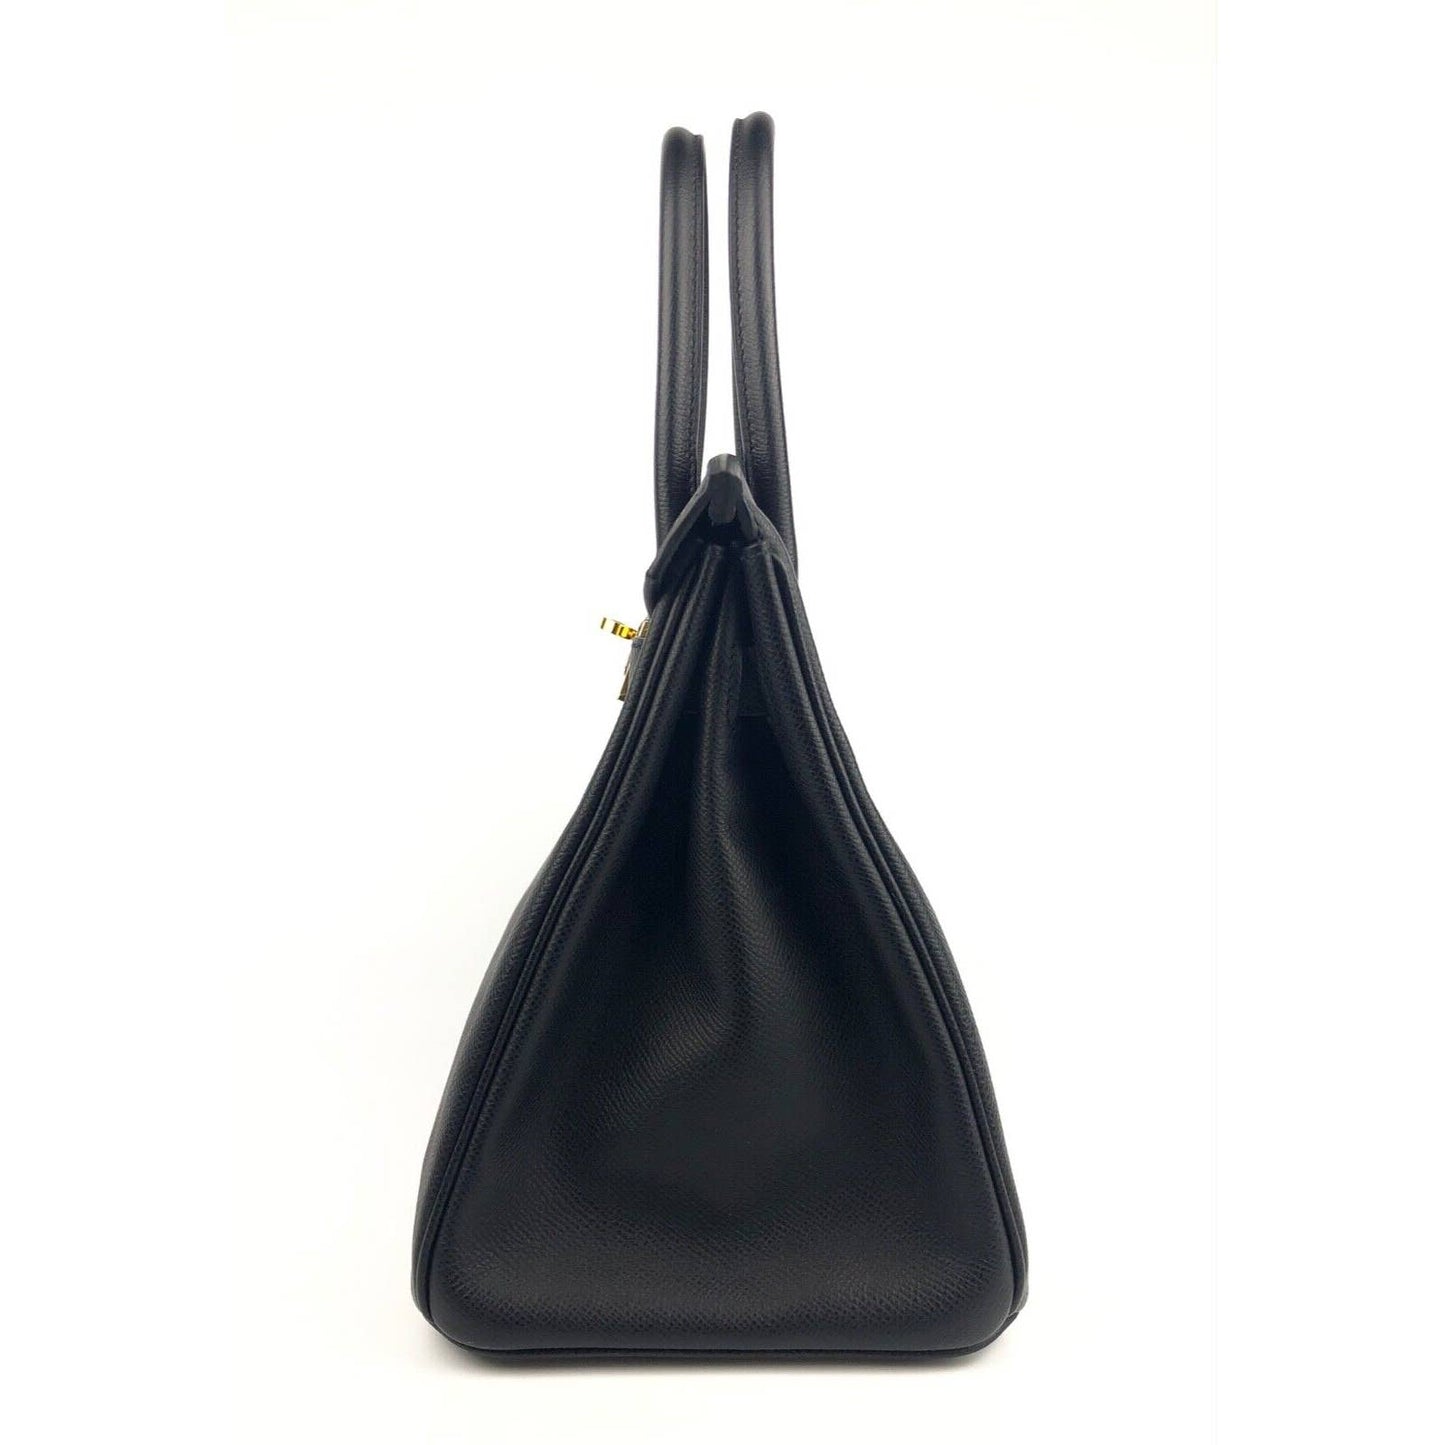 Hermes Birkin 30 Black Epsom Leather Gold Hardware Bag Handbag 2022